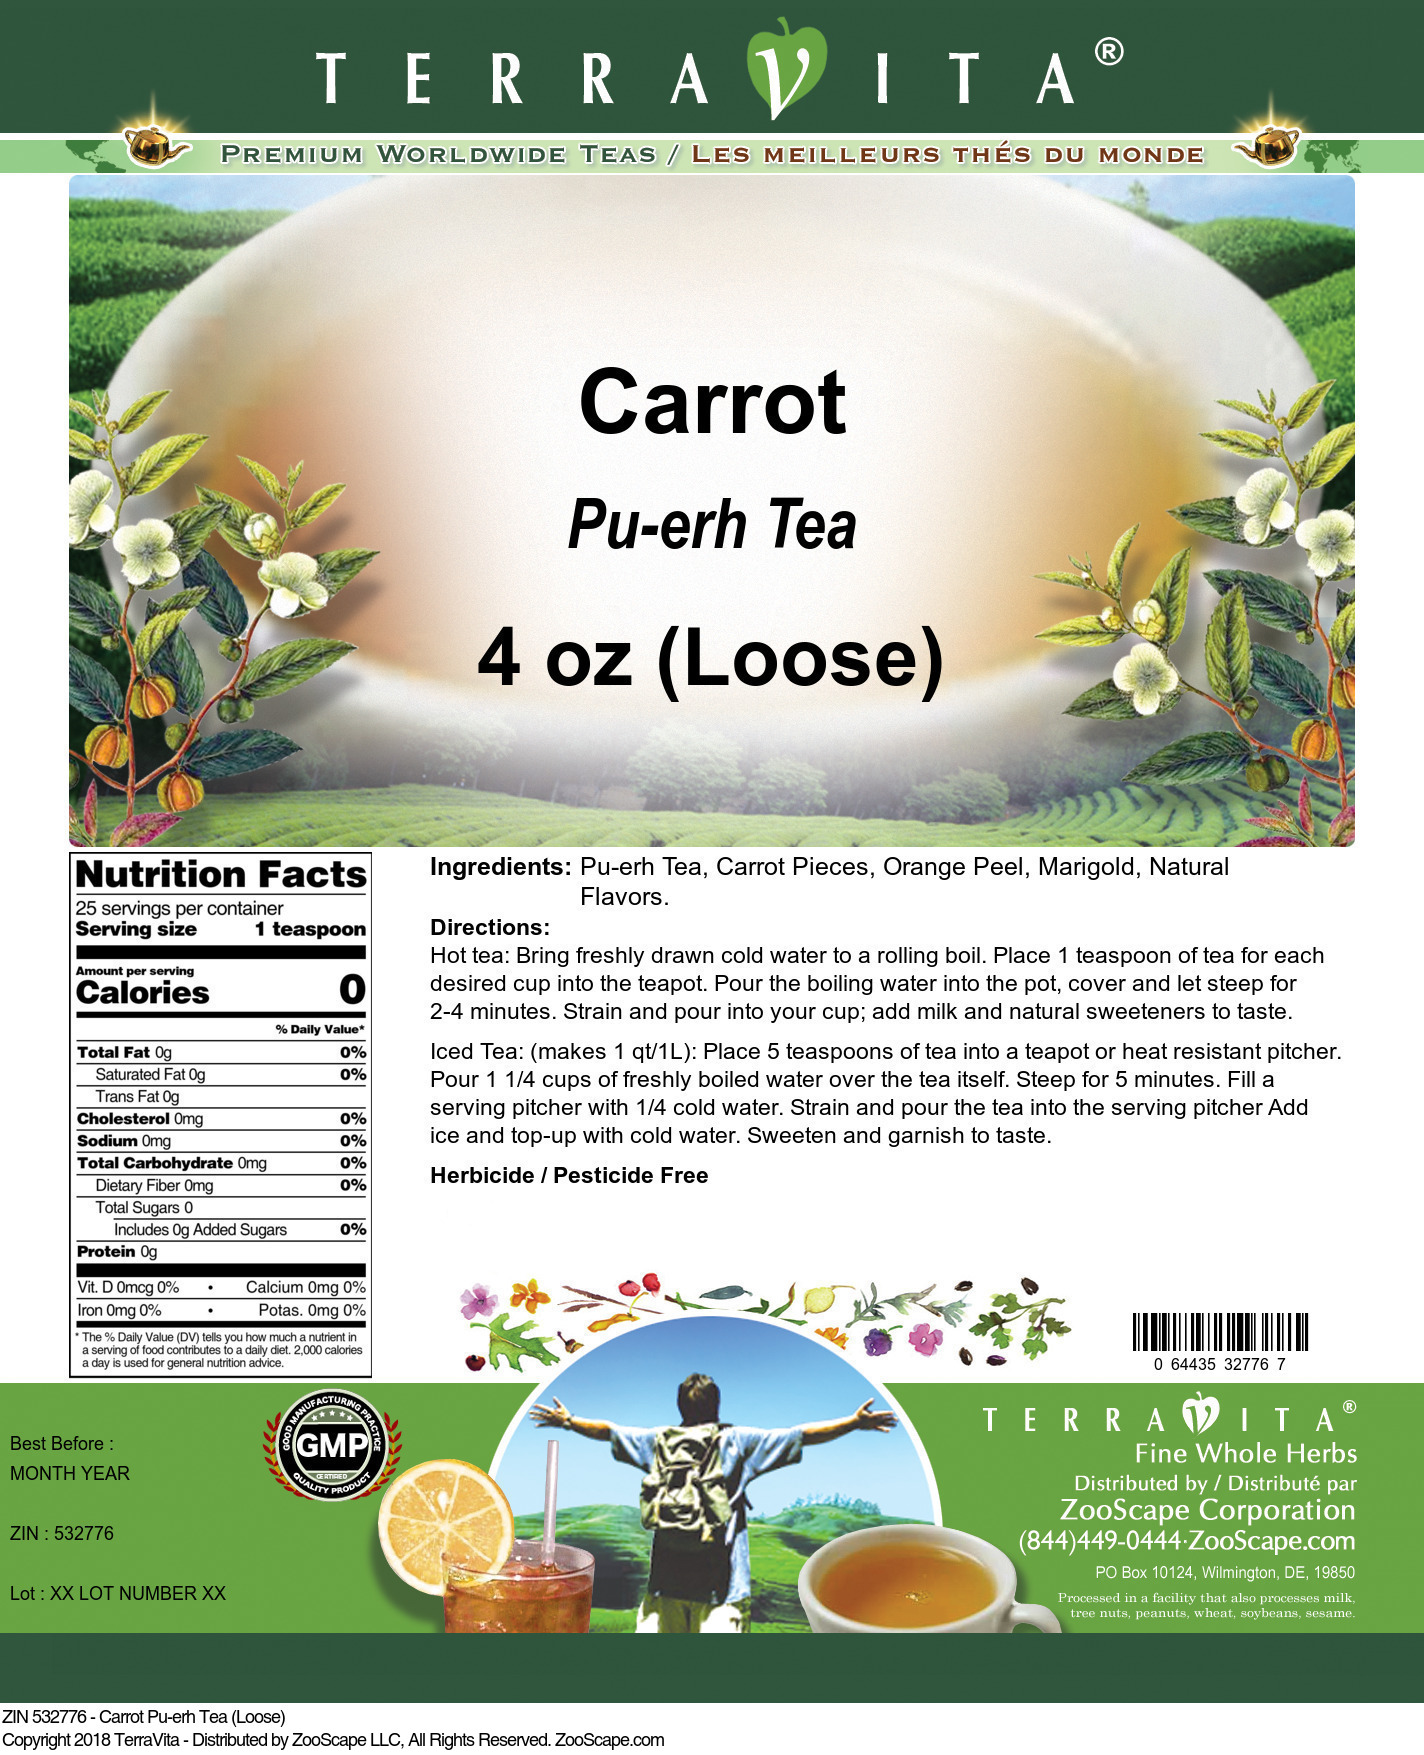 Carrot Pu-erh Tea (Loose) - Label